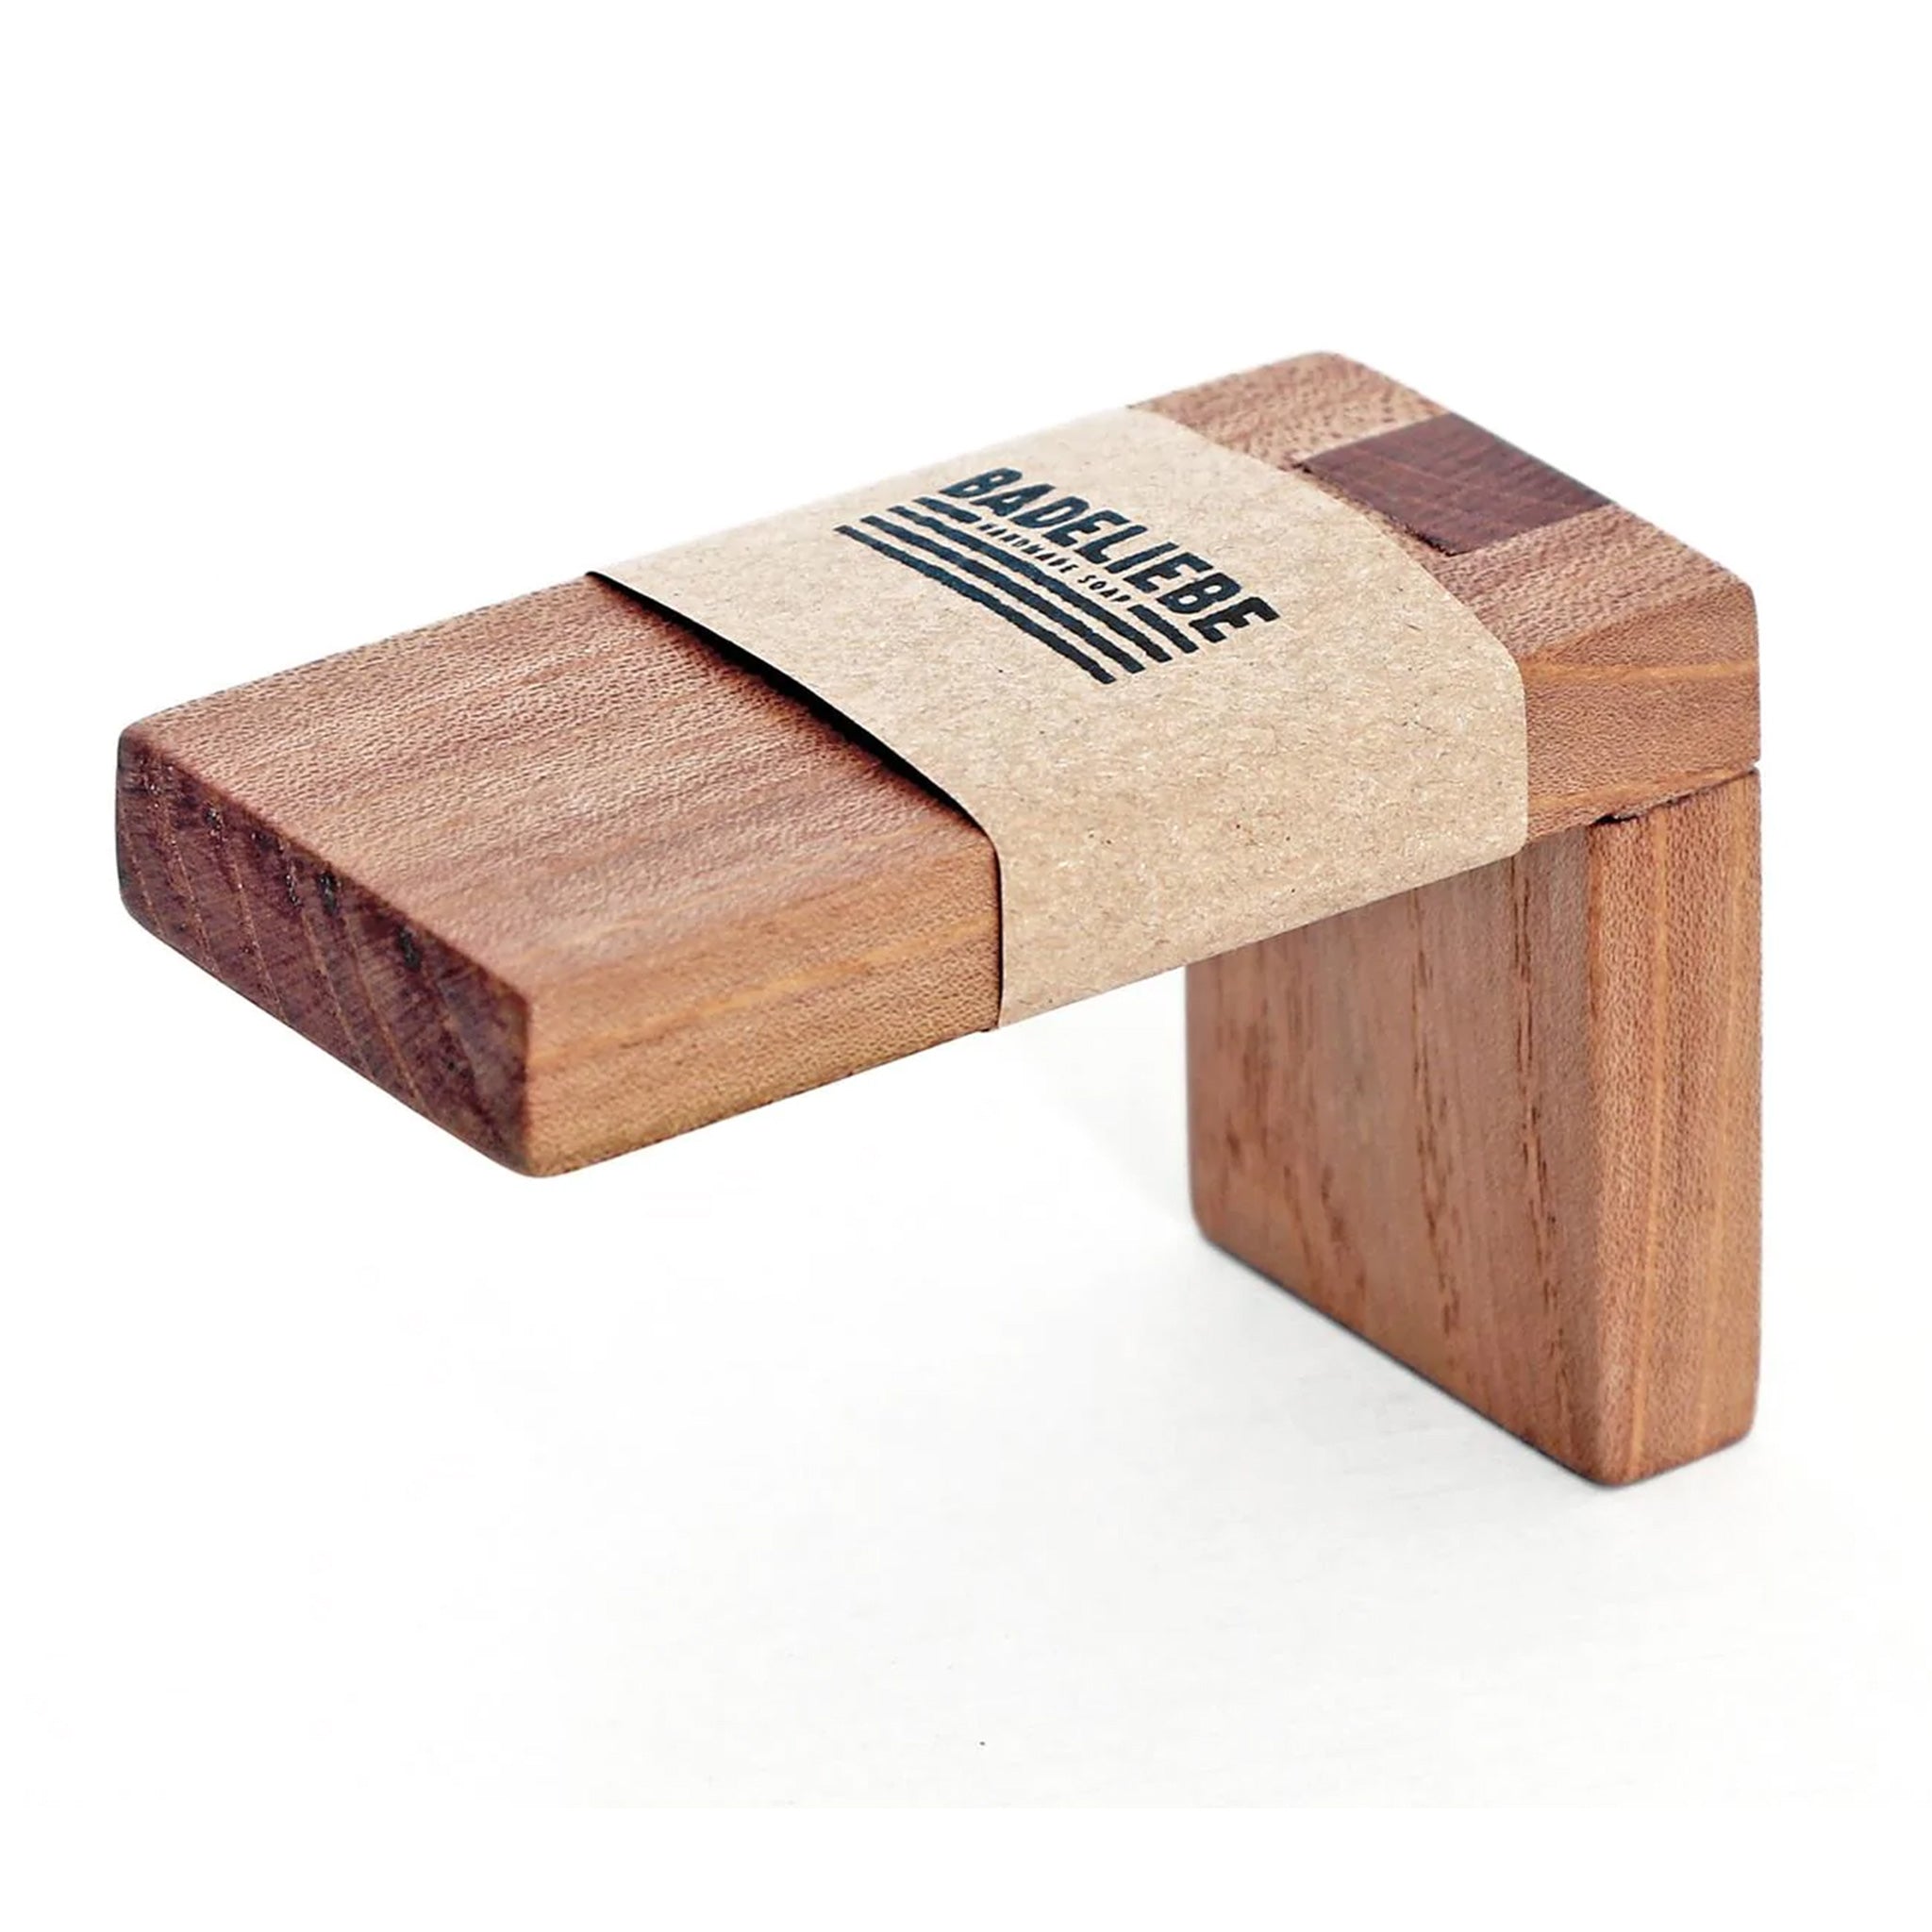 Seifenhalter "Holz" mit Magnet – 4 x 6 x 8 cm (B/H/T)